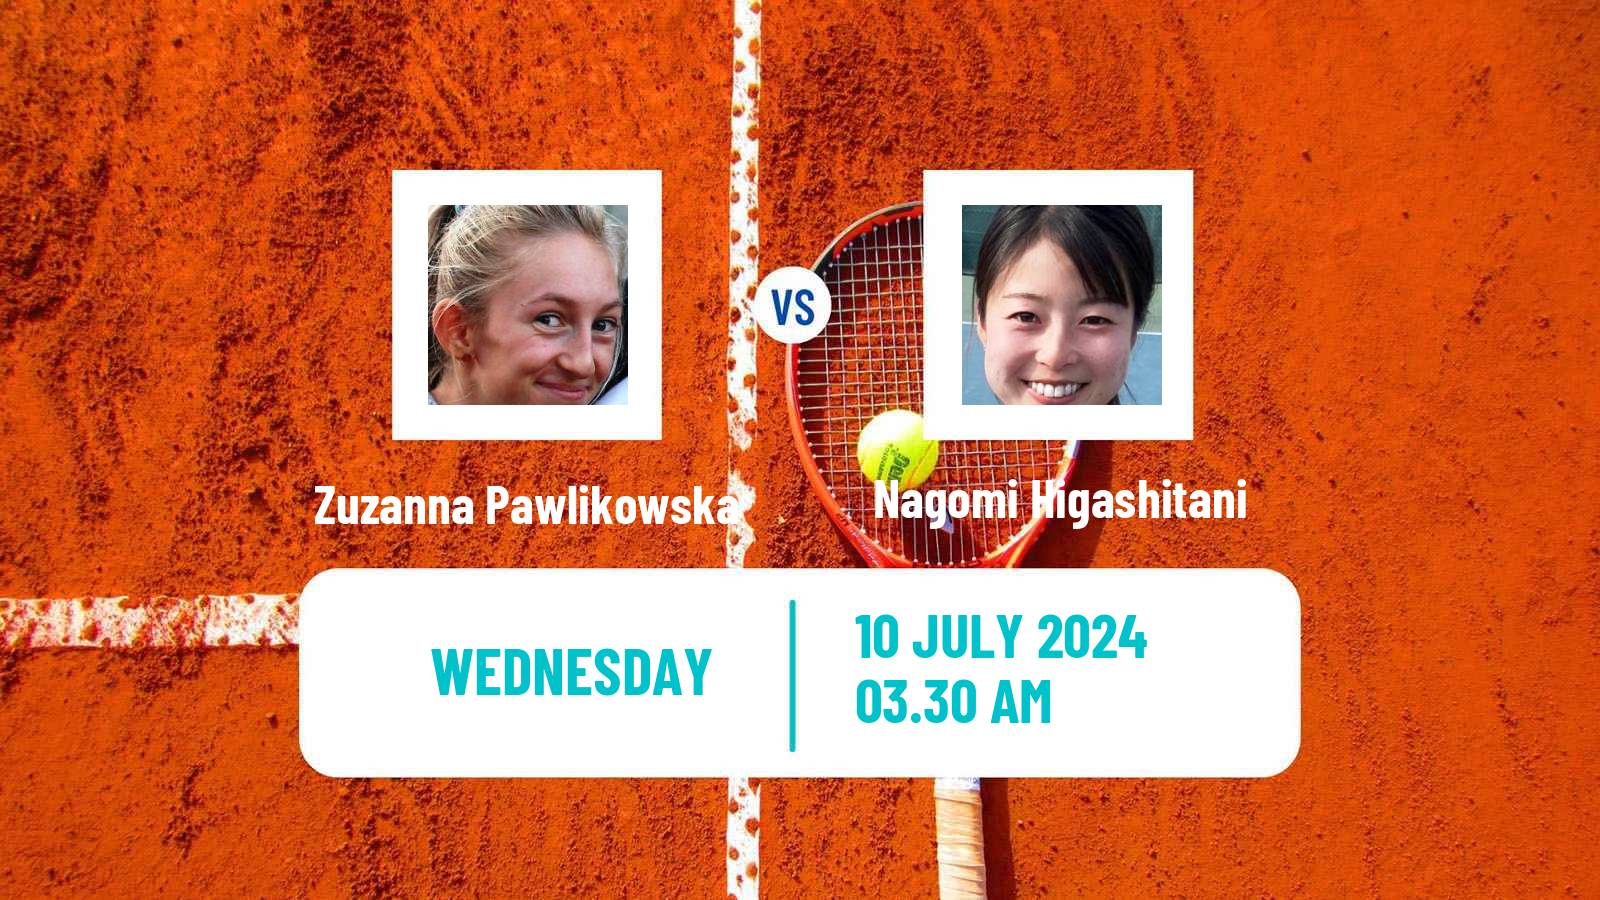 Tennis ITF W15 Grodzisk Mazowiecki Women Zuzanna Pawlikowska - Nagomi Higashitani